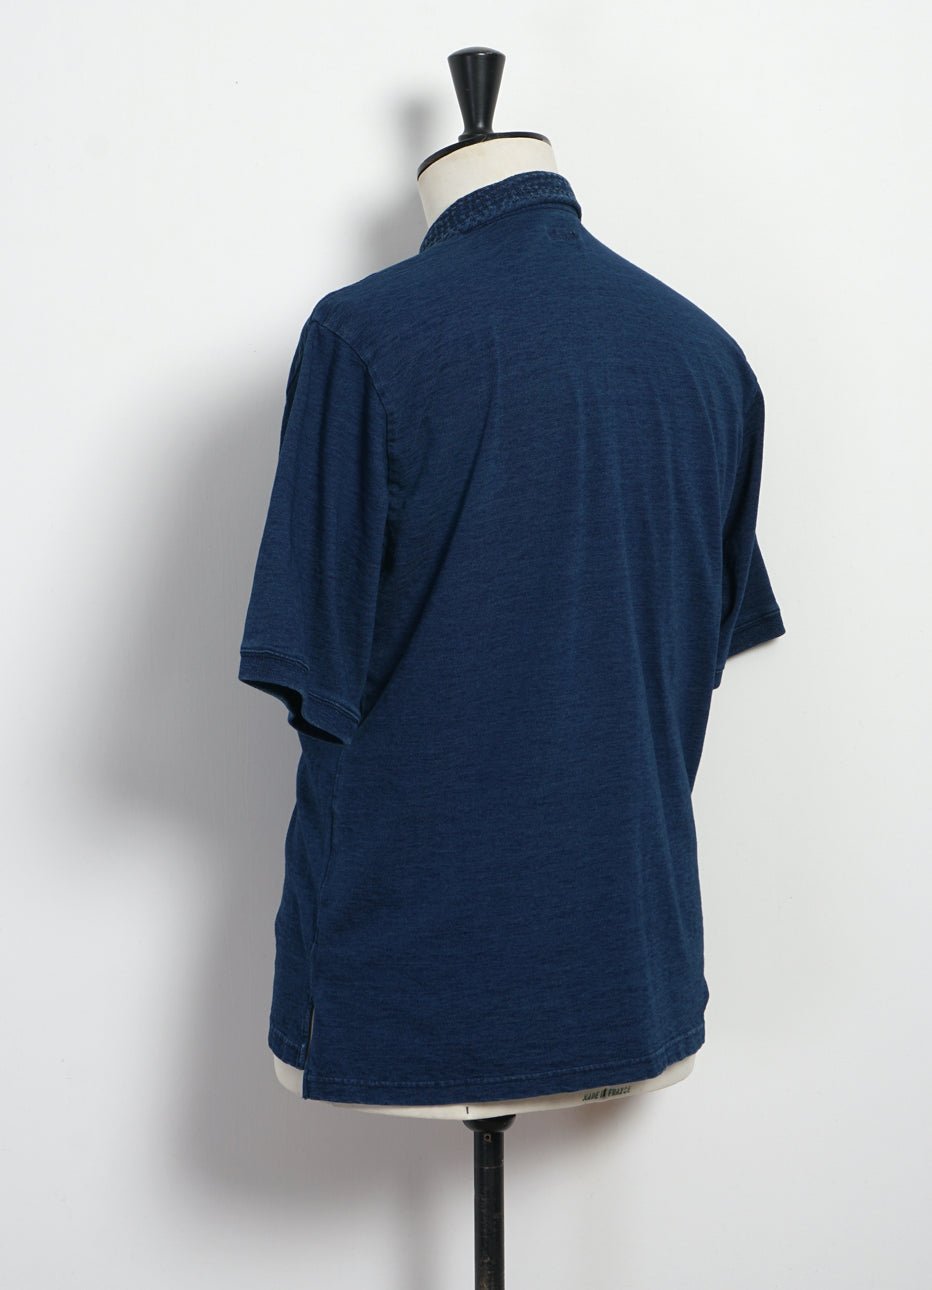 KAPITAL - INDIGO | Jersey Sashiko Polo Shirt | Indigo - HANSEN Garments